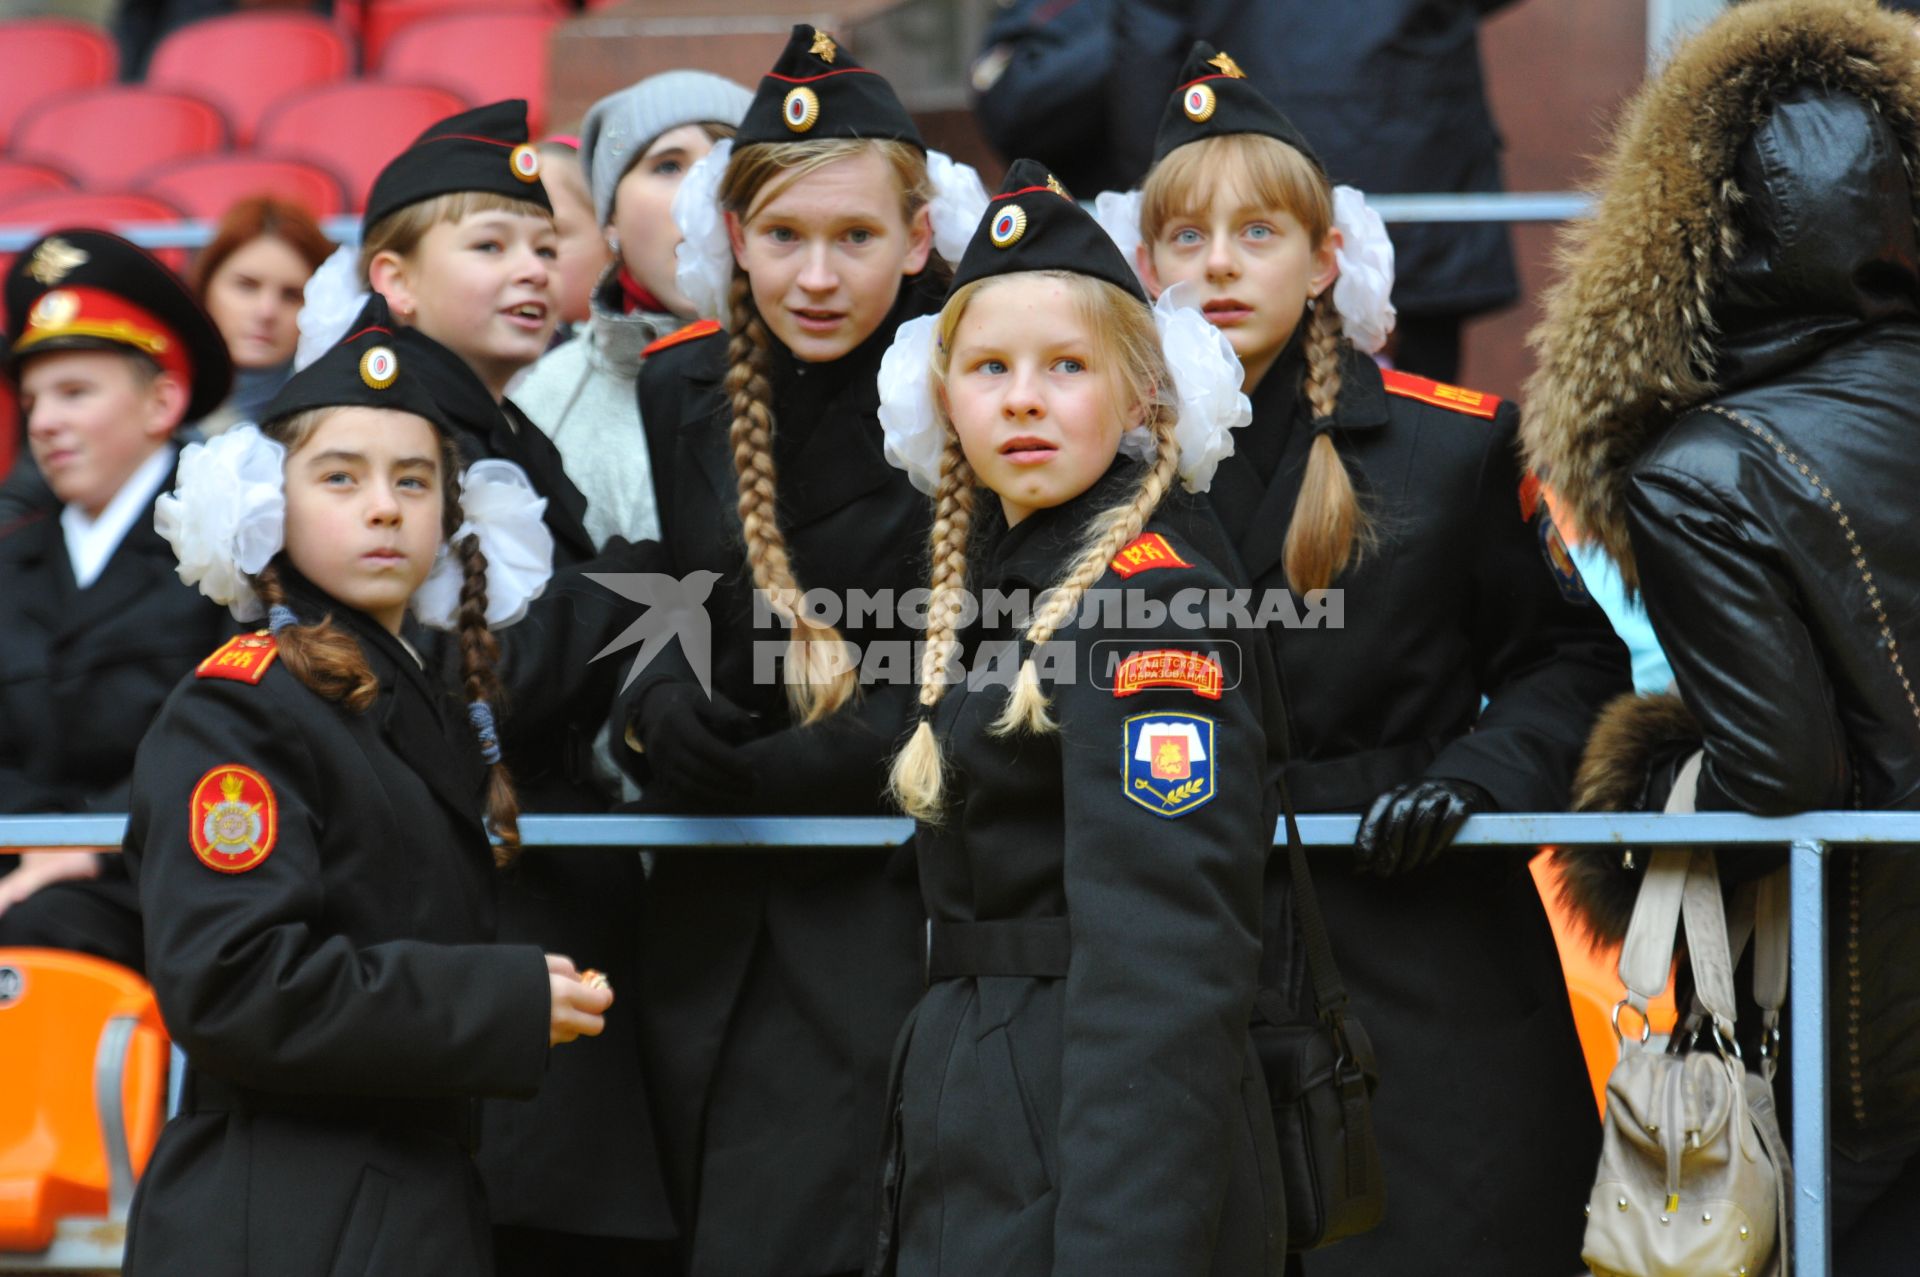 СК `Лужники`.  Спортивный праздник московской полиции. На снимке: кадеты.